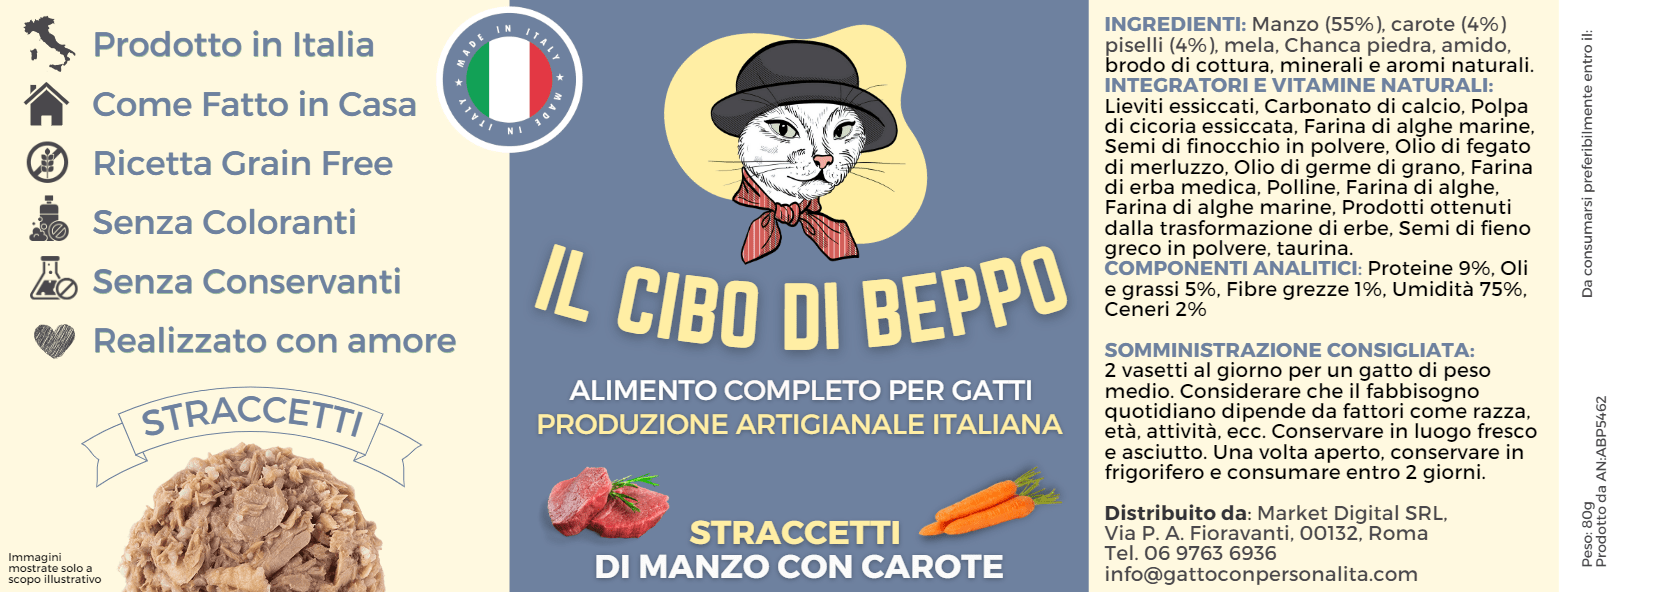 Gatto Con Personalità Il Cibo di Beppo - Straccetti in Vasocottura (alimento completo) - 80g